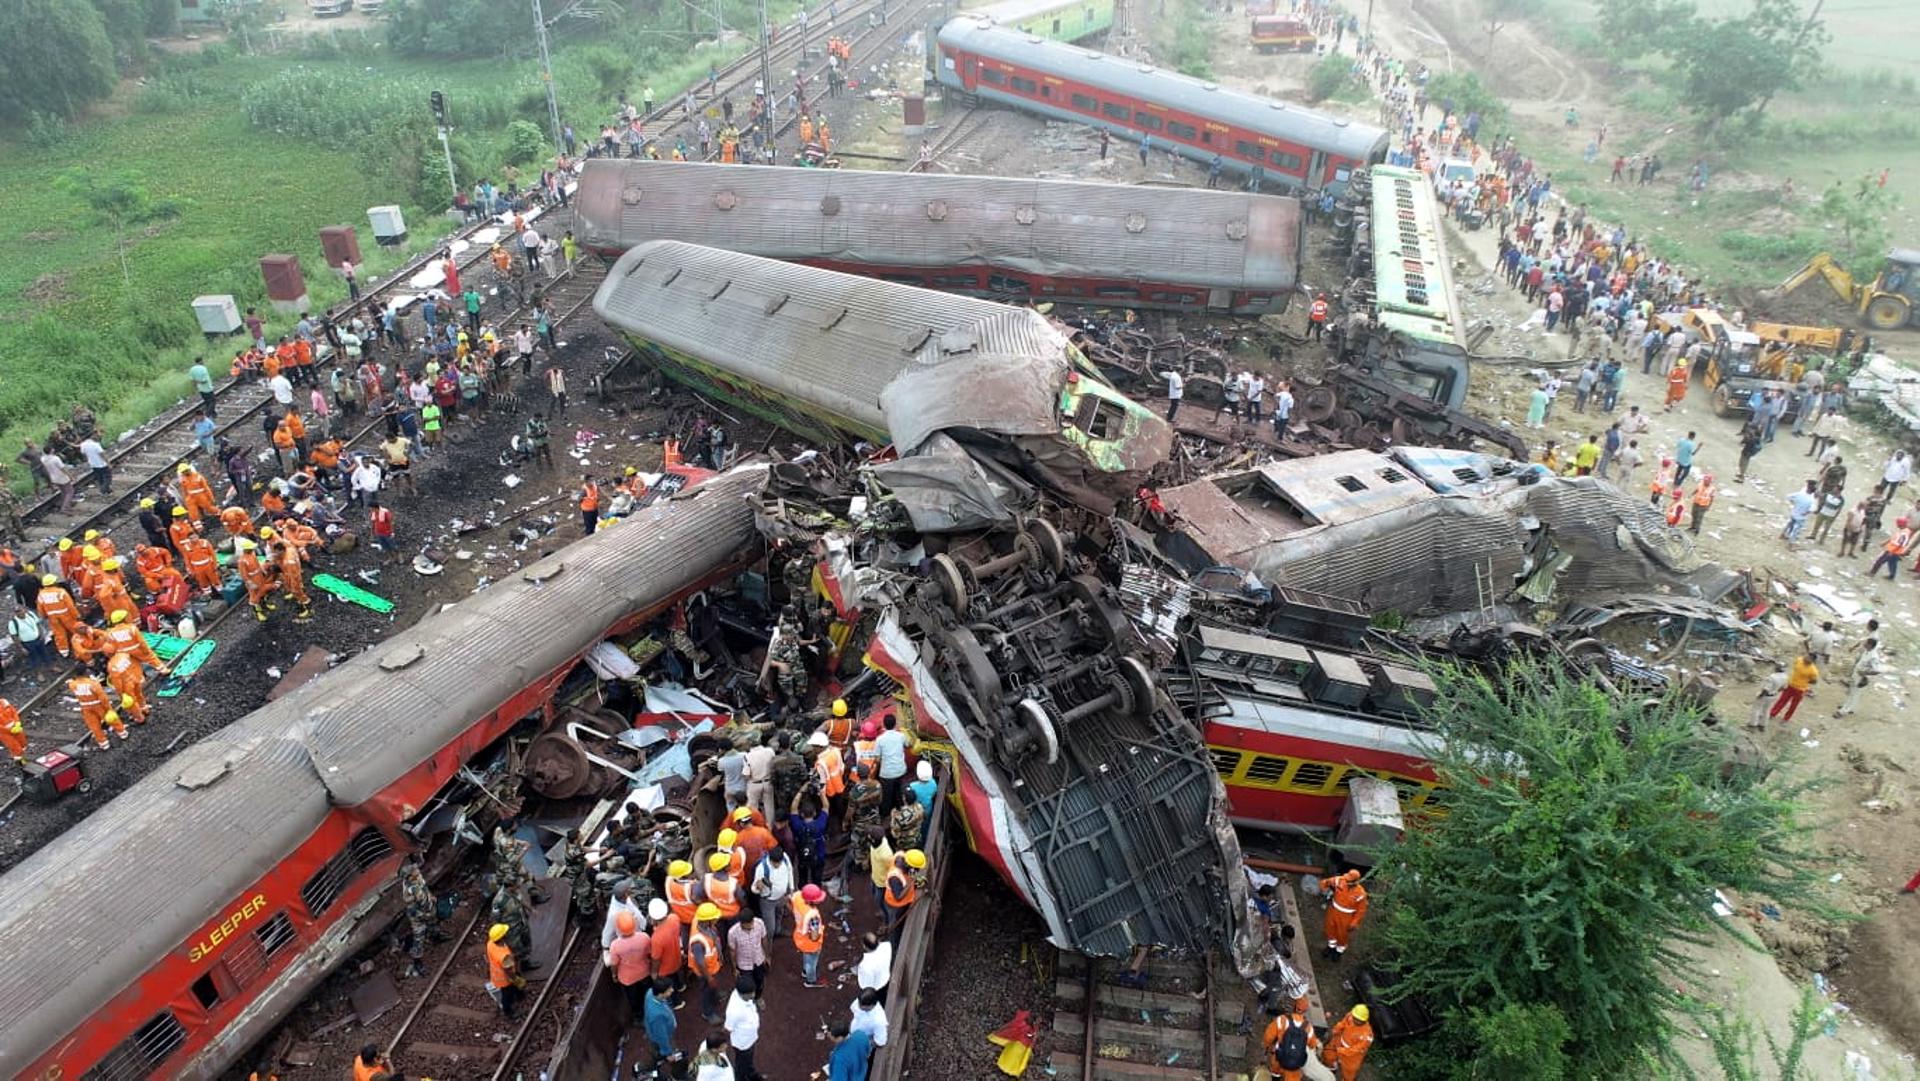 Una imatge de l'accident de trens a l'Índia / EFE - EPA NATIONAL DISASTER RESPONSE FORCE